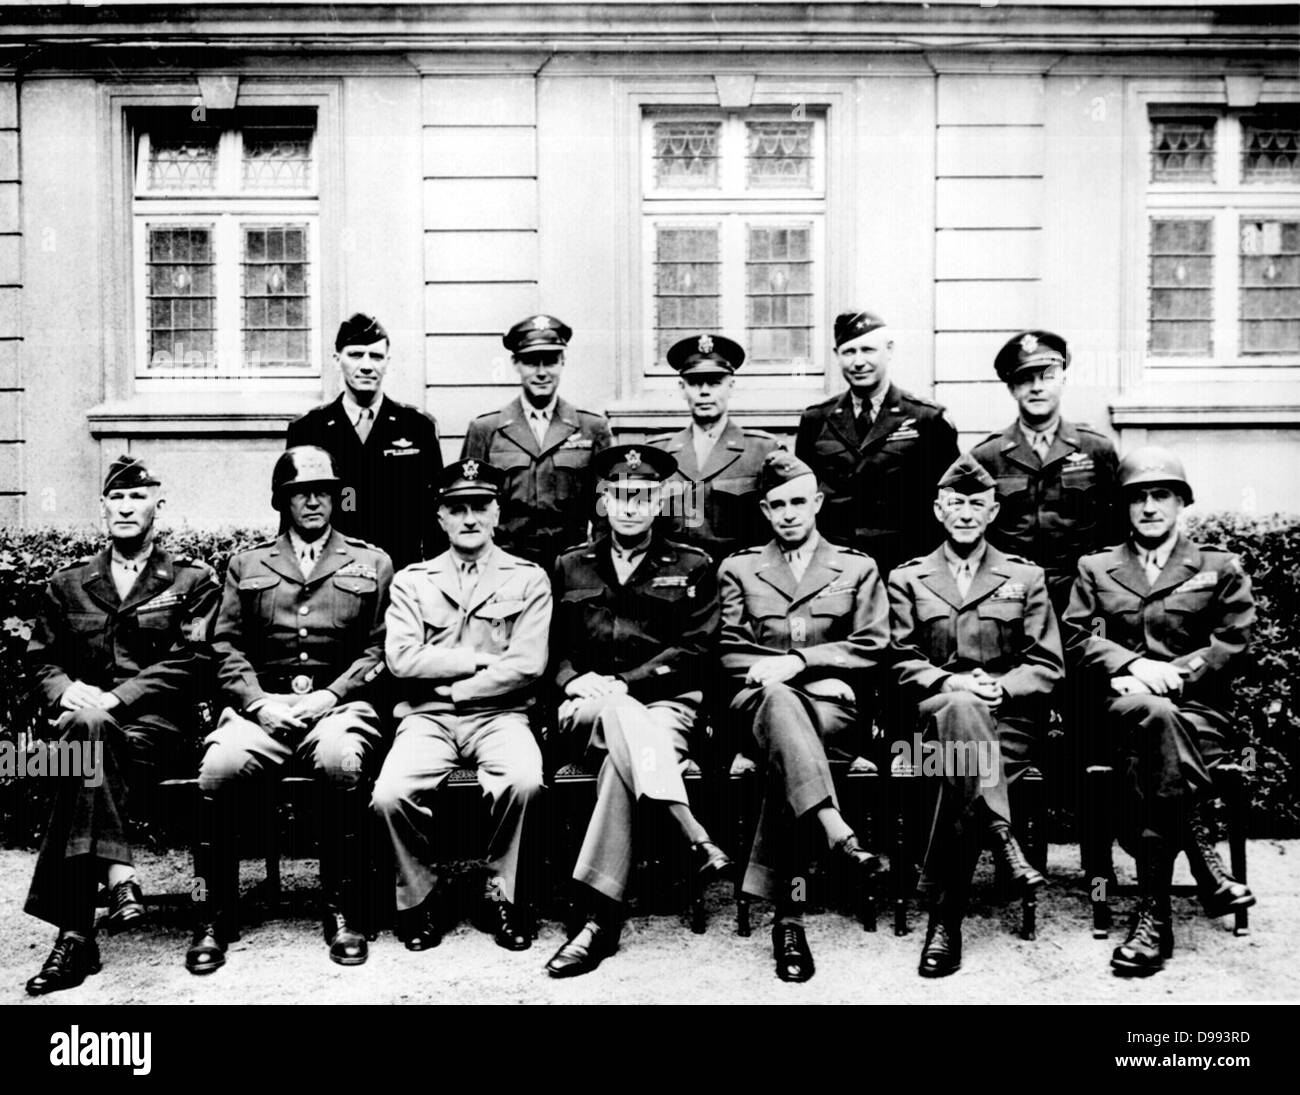 Ältere amerikanische Offiziere während des Zweiten Weltkrieges. Sitzend (von links nach rechts) Generälen William H. Simpson, George S. Patton, Carl A. Spaatz, Dwight D. Eisenhower, Omar Bradley, Courtney H. Hodges, und Leonard T. Gerow; stehend (von links nach rechts) Ralph Stockfoto